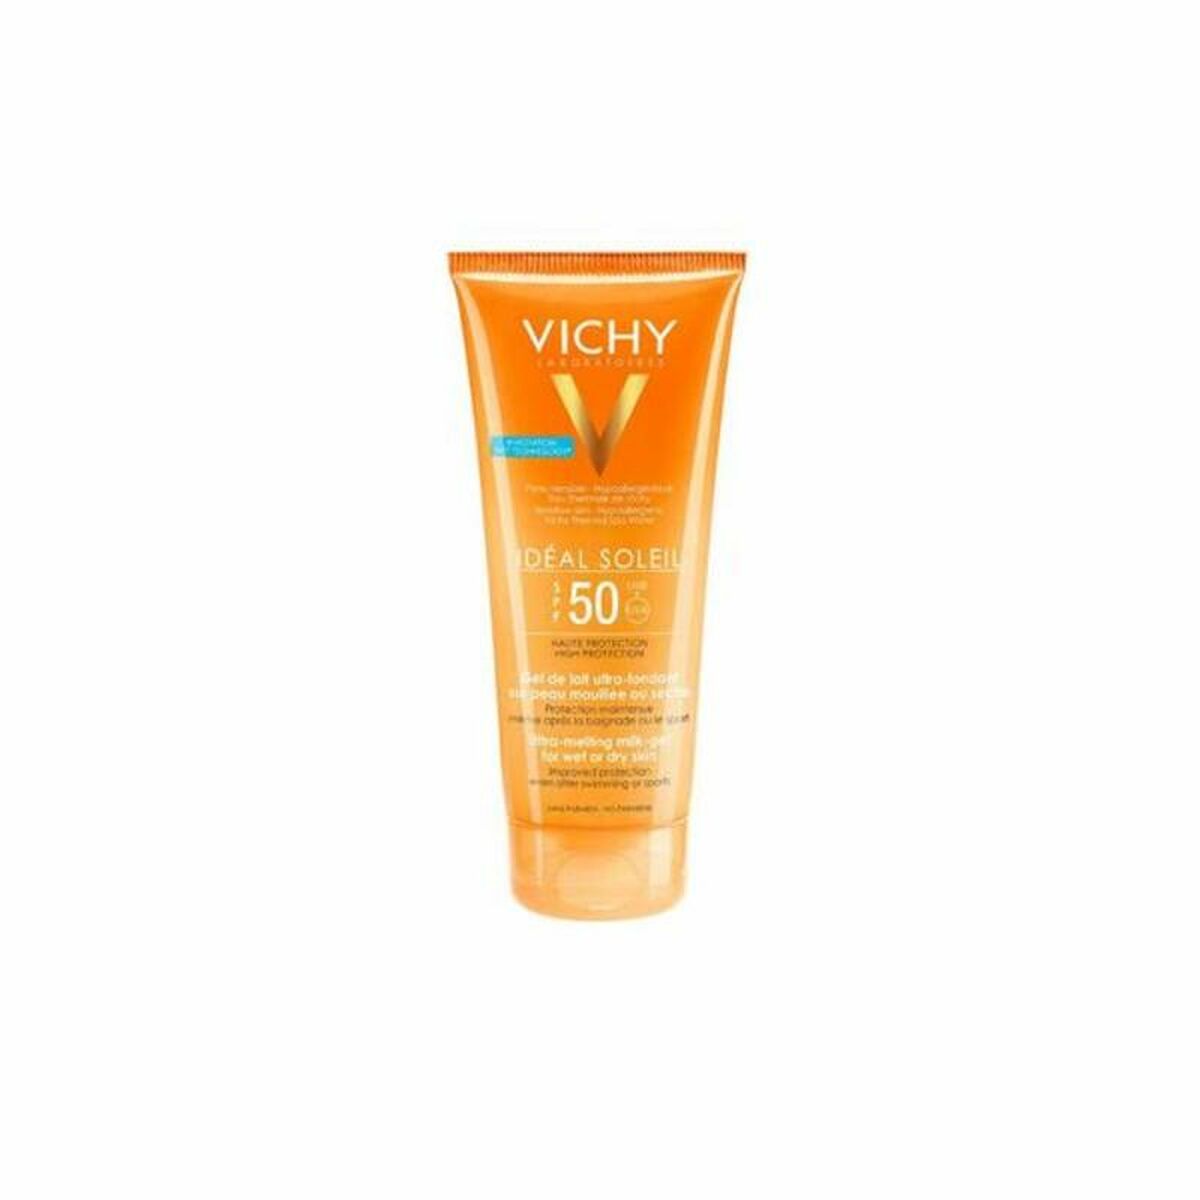 Facial Sun Cream Capital Soleil Milk-Gel Vichy Spf 50 (200 ml)-0